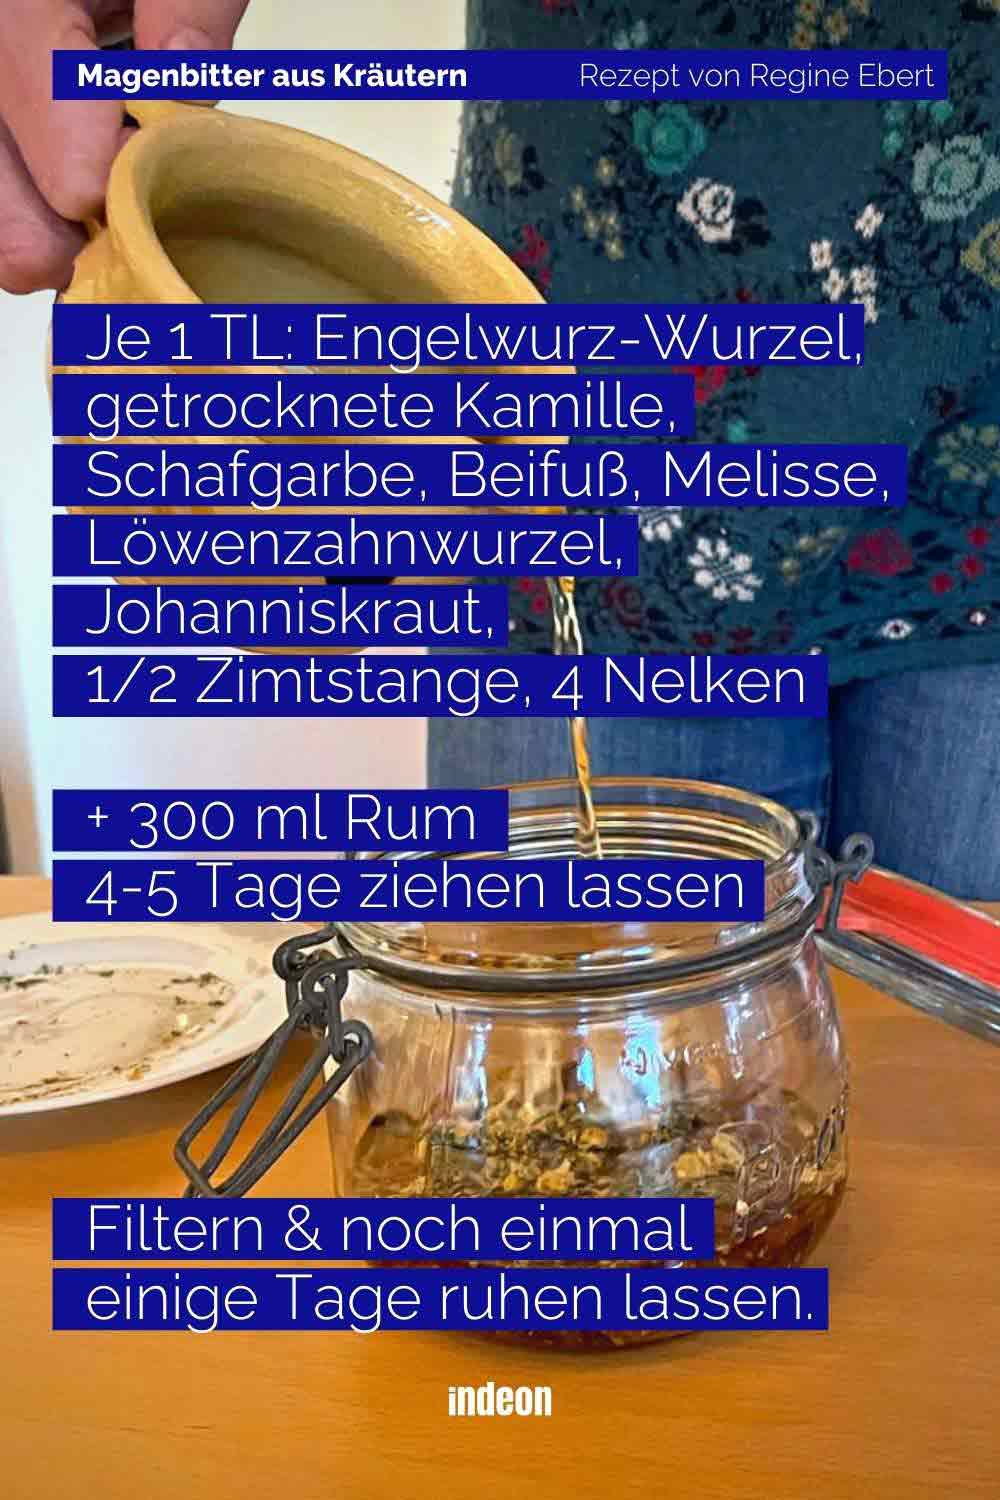 DIY: Rezept für Magenbitter von indeon.de